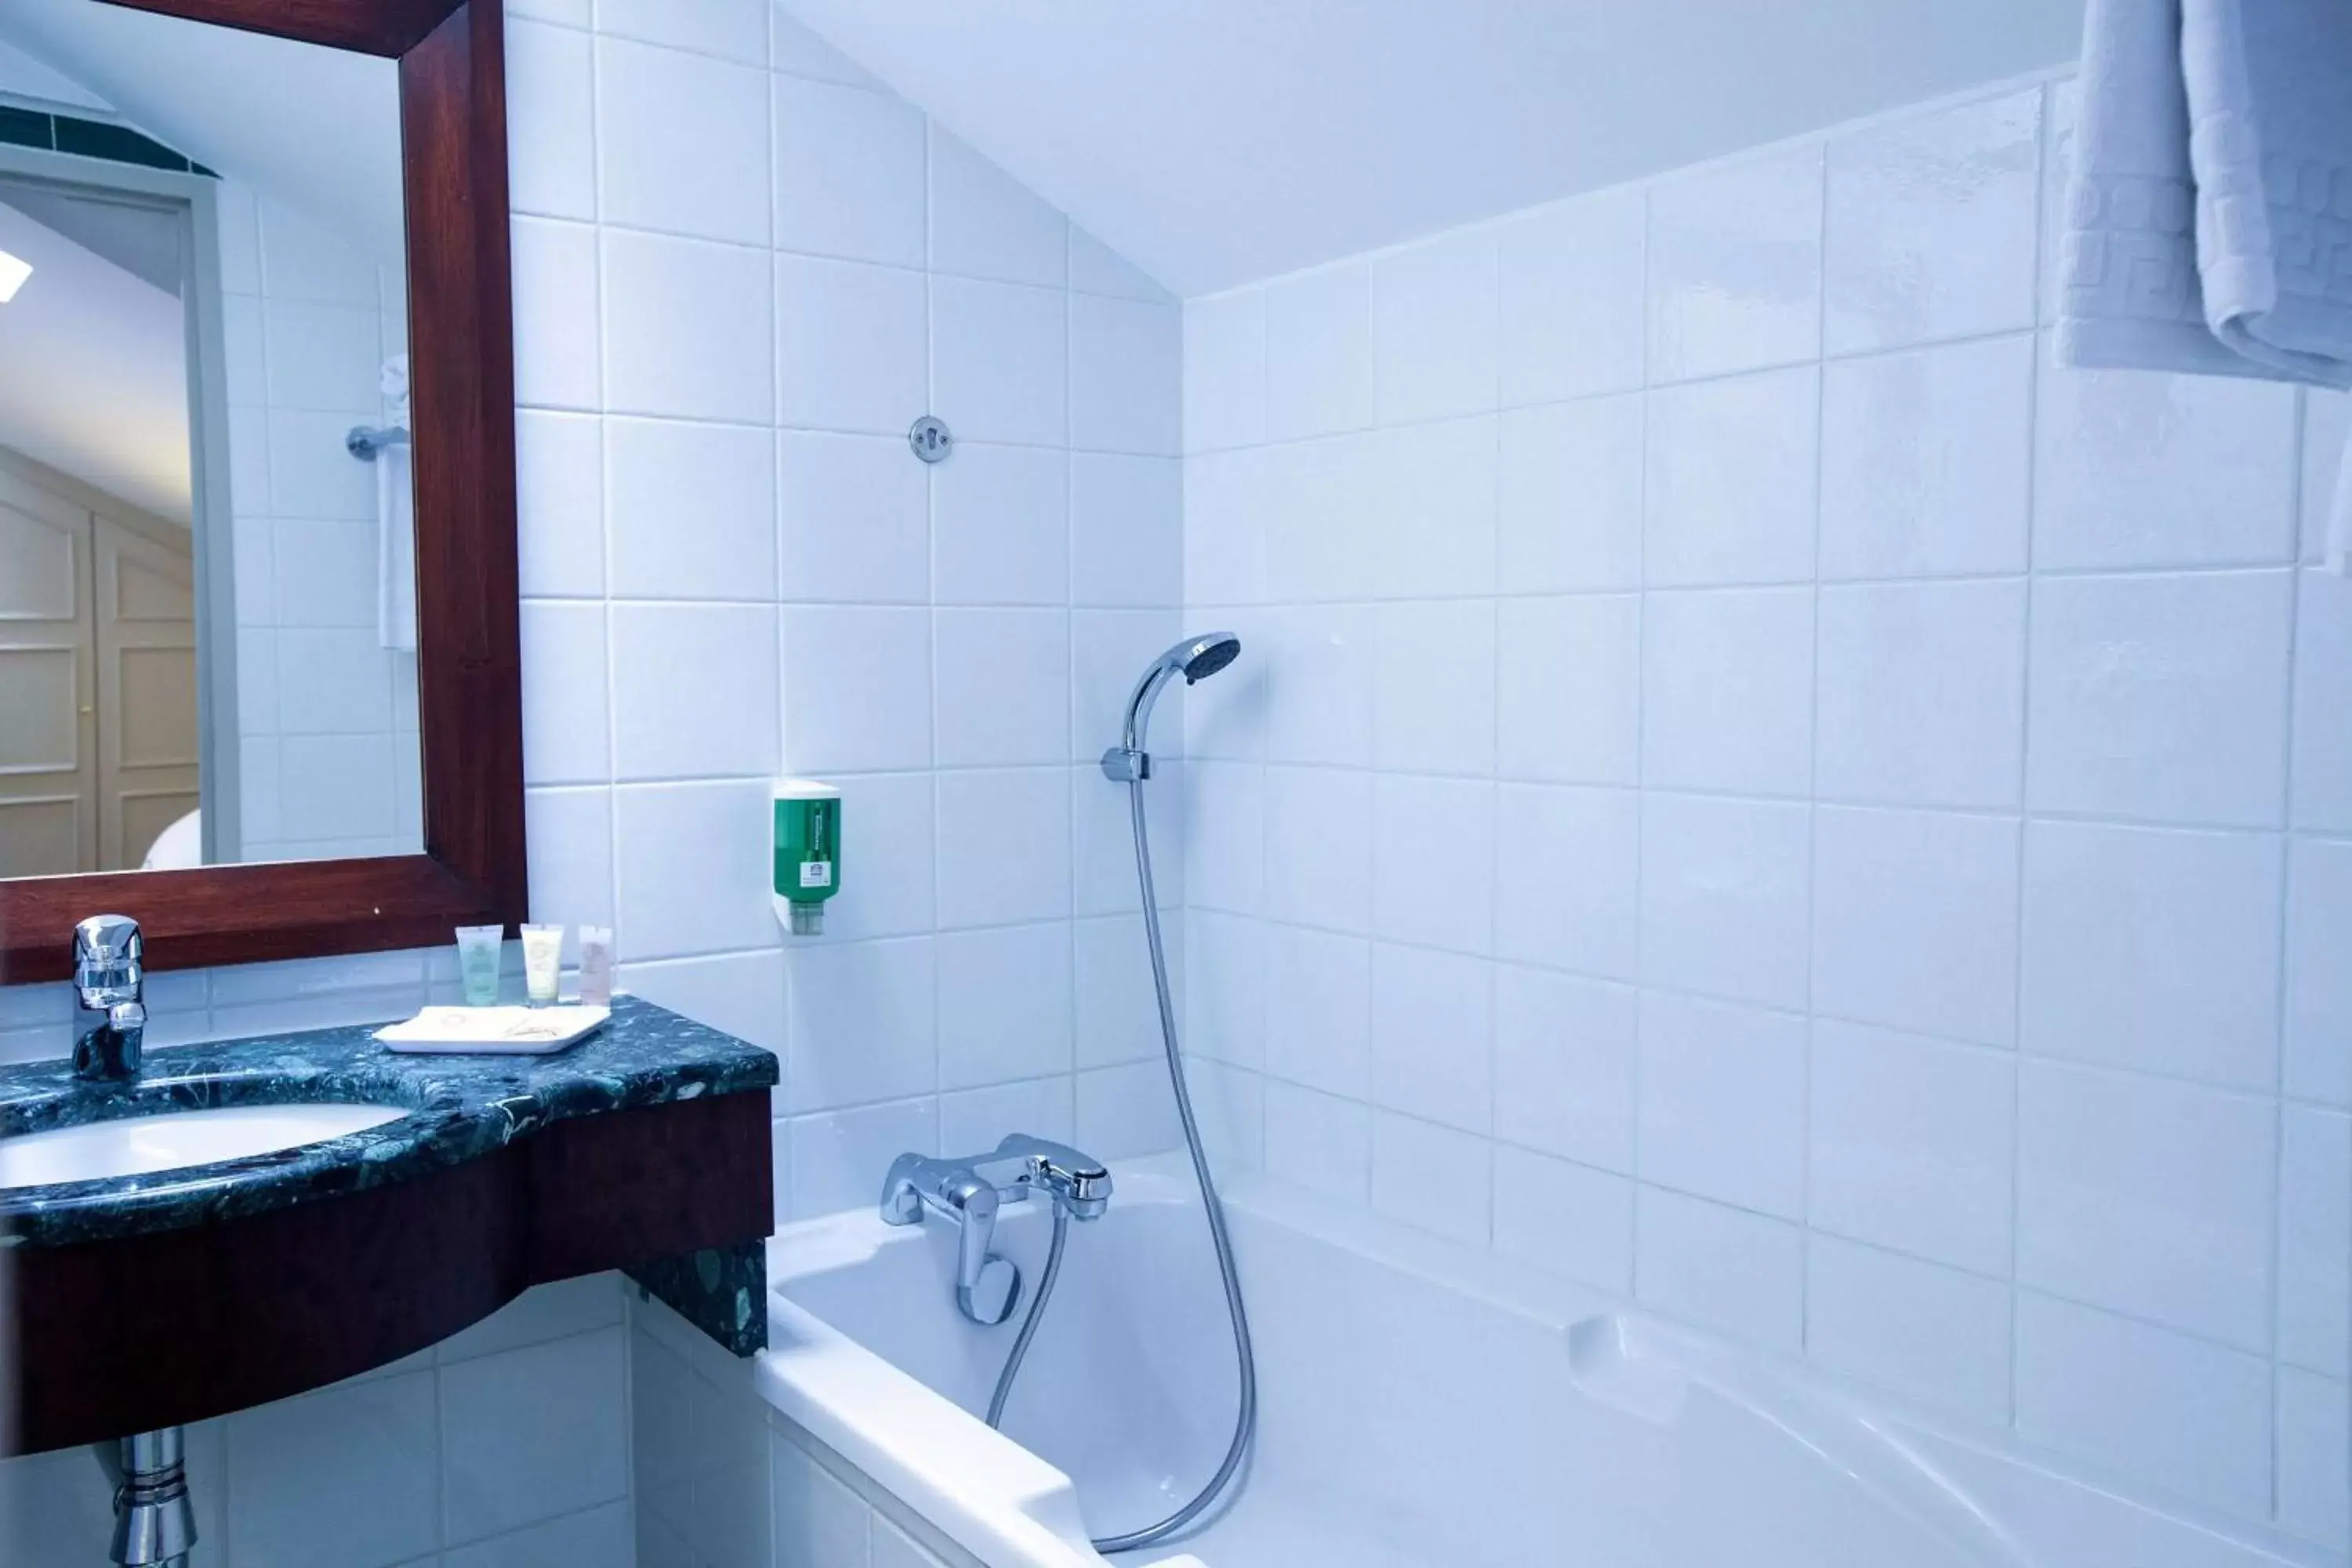 Bathroom in Best Western Plus Crystal, Hotel & Spa